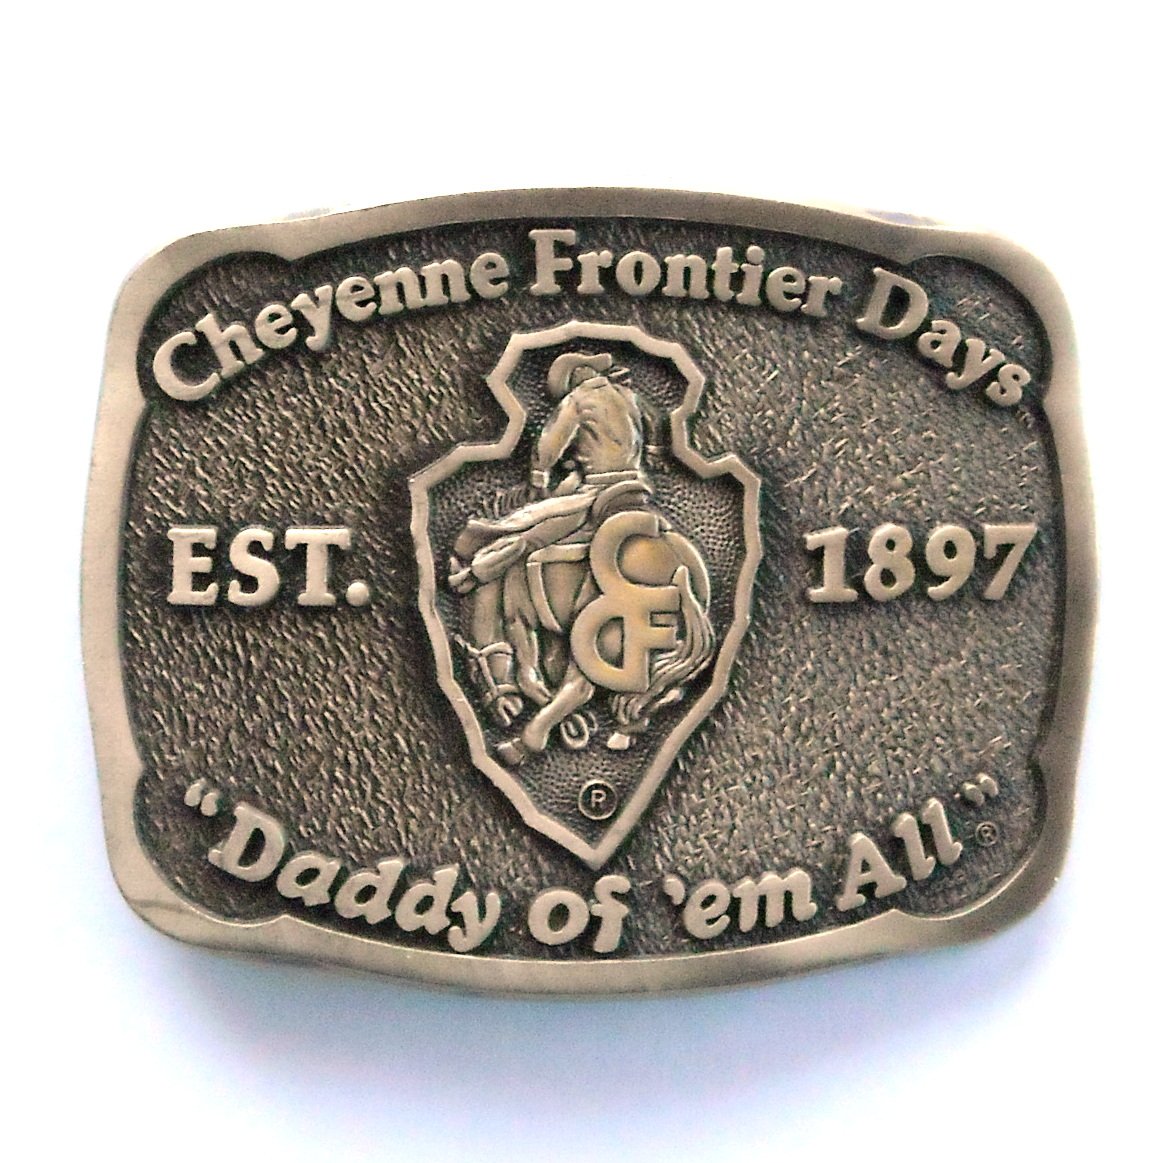 Cheyenne Frontier Days Award Design Solid brass belt buckle